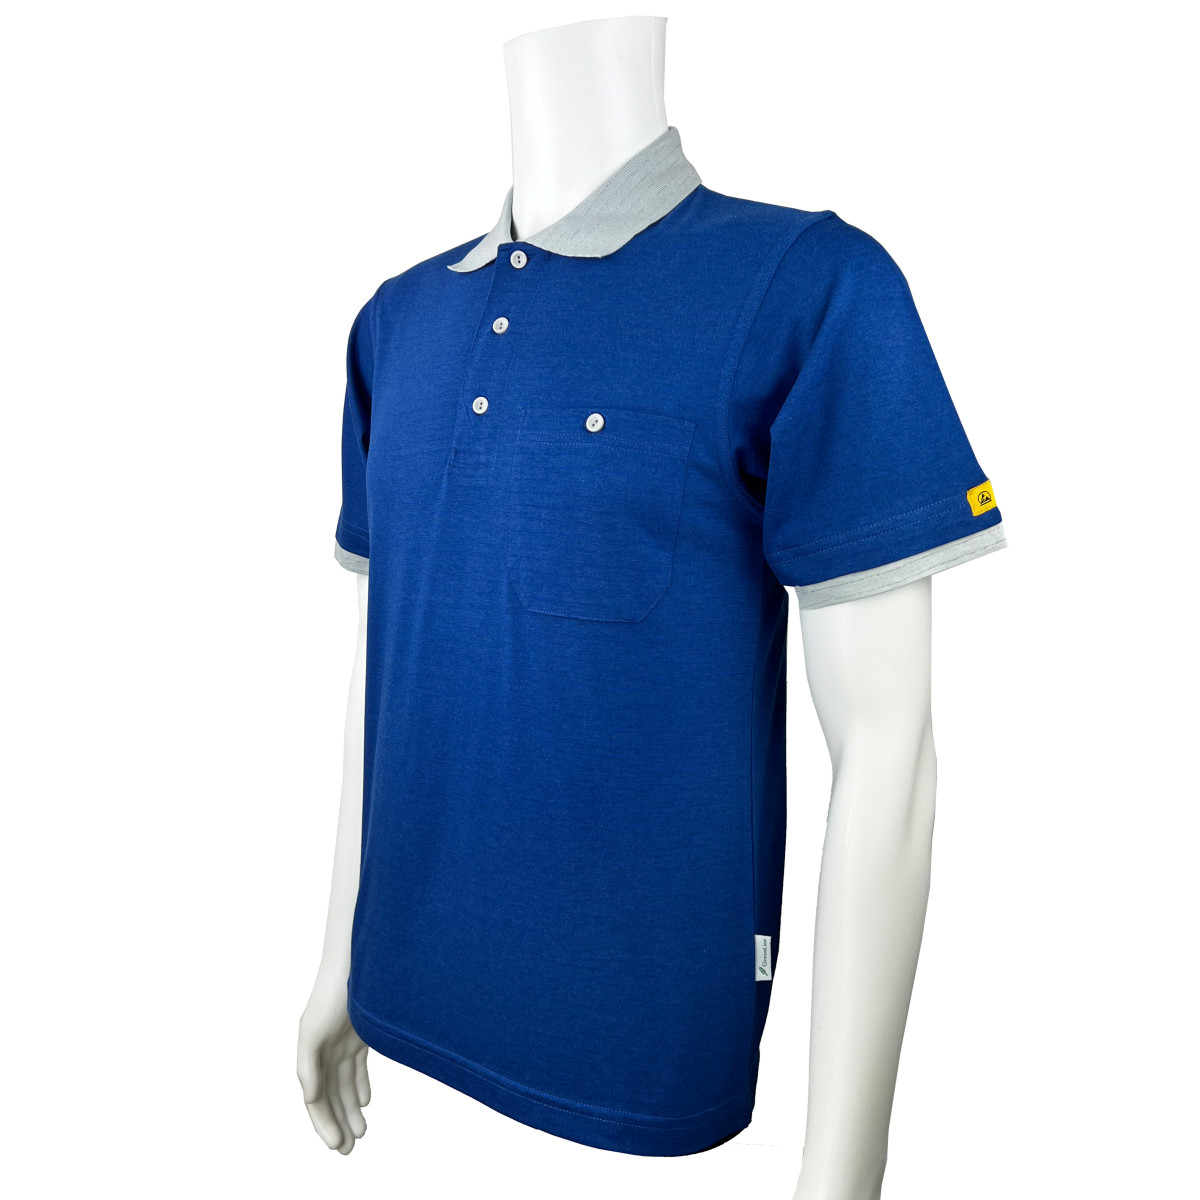 KETEX® Poloshirt cobalt blue/grey